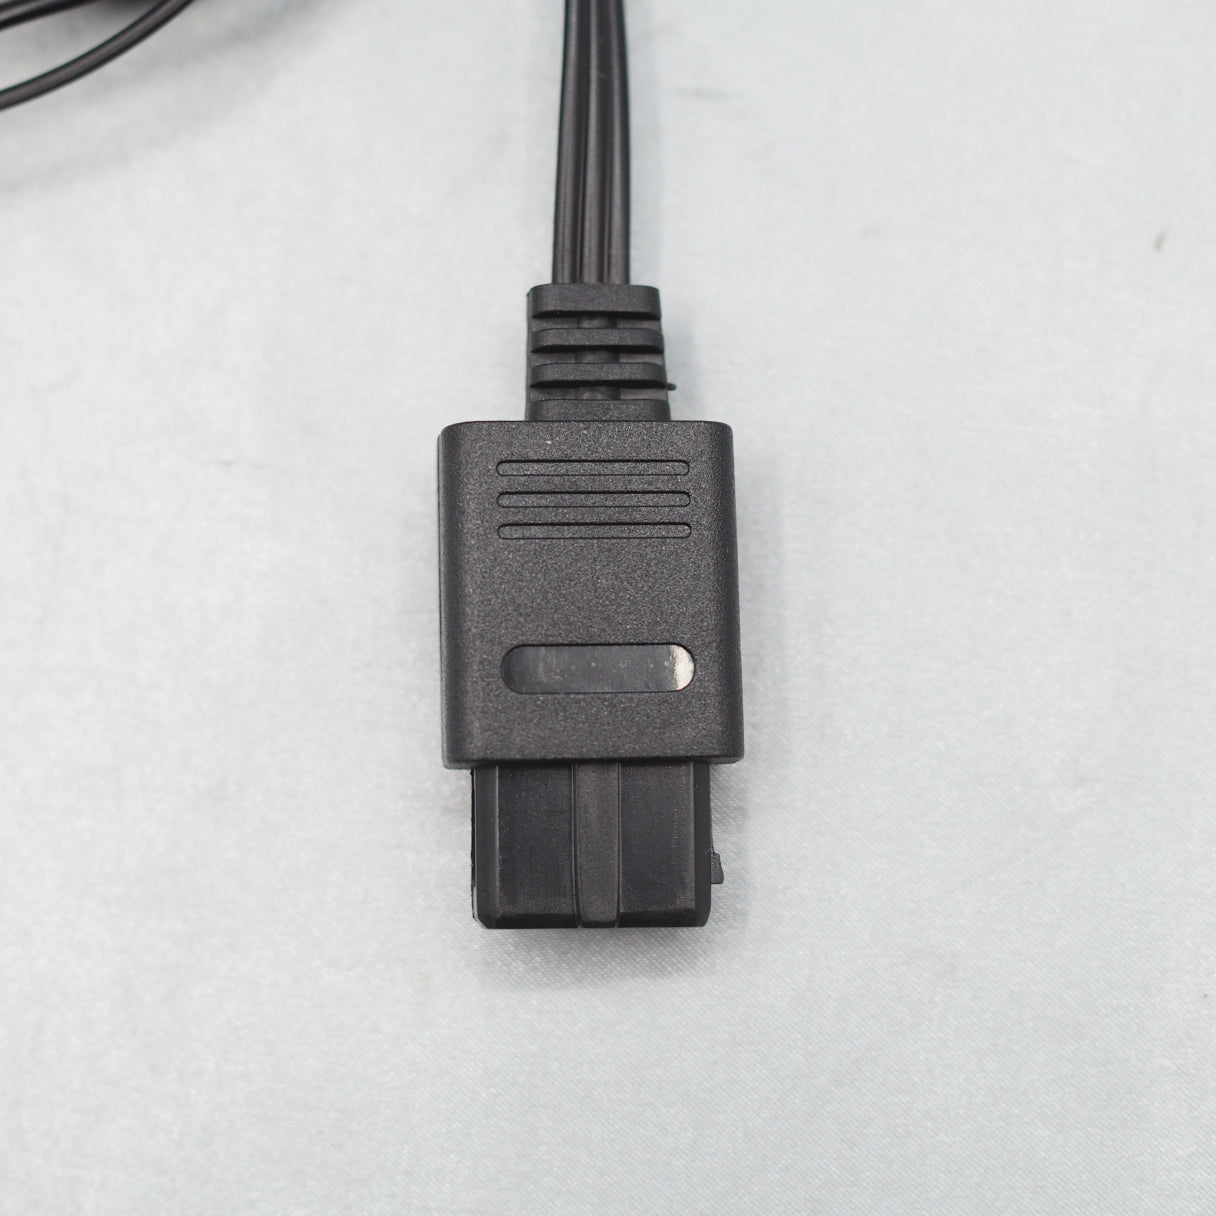 Stereo AV cable [For Nintendo Famicom, Super Famicom, N64, Gamecube]